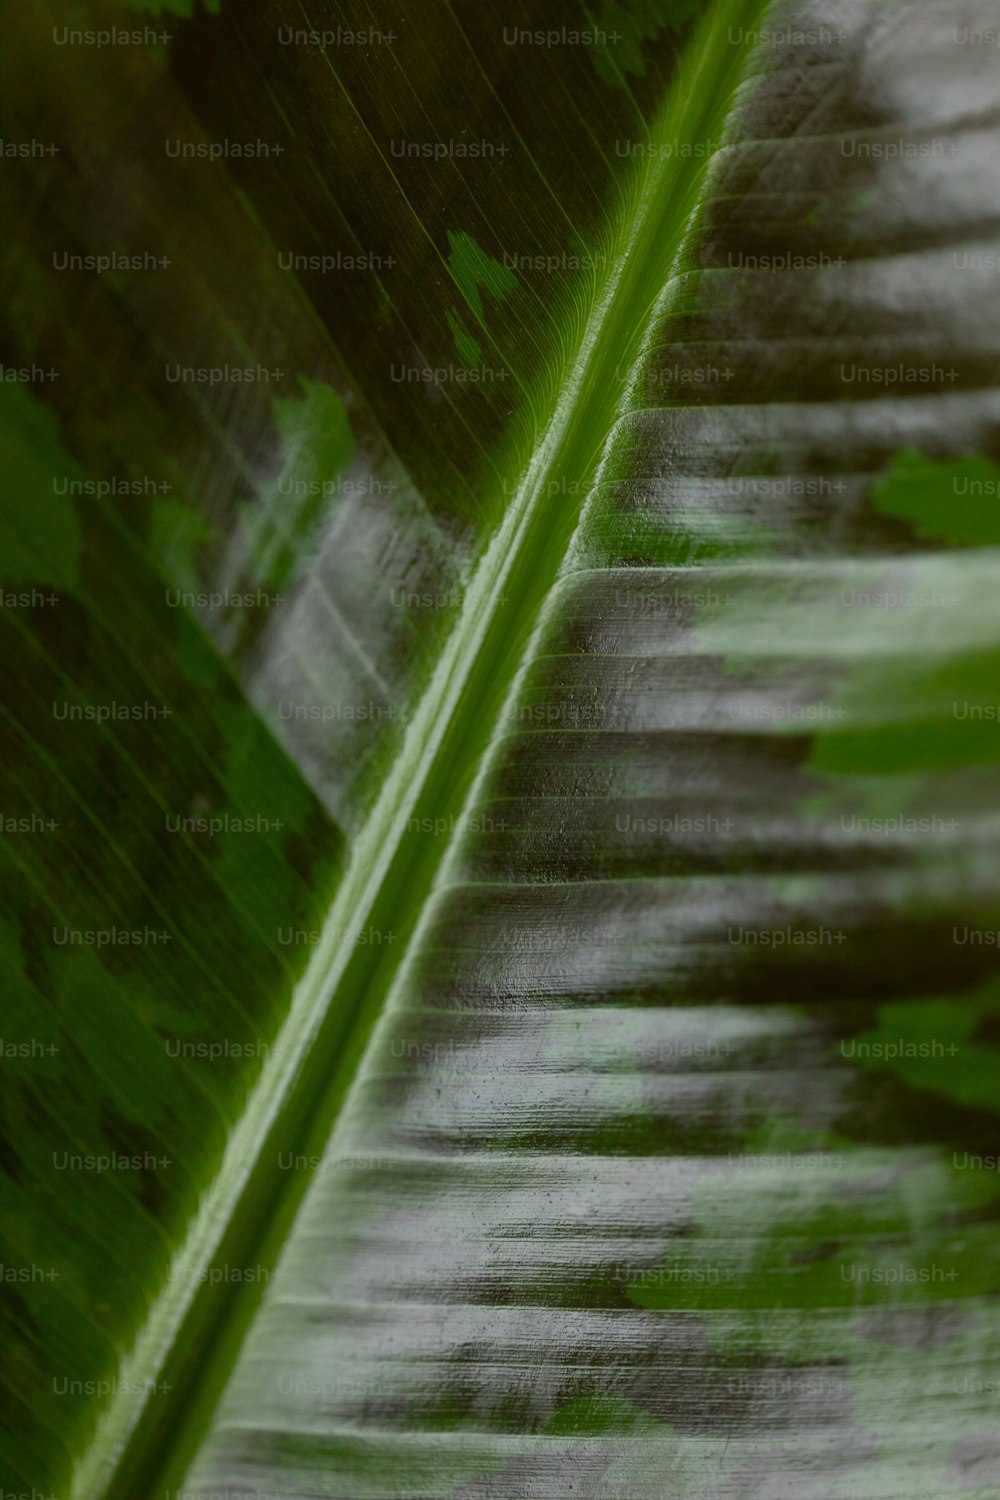 A close up of a large green leaf photo – Leaf Image on Unsplash